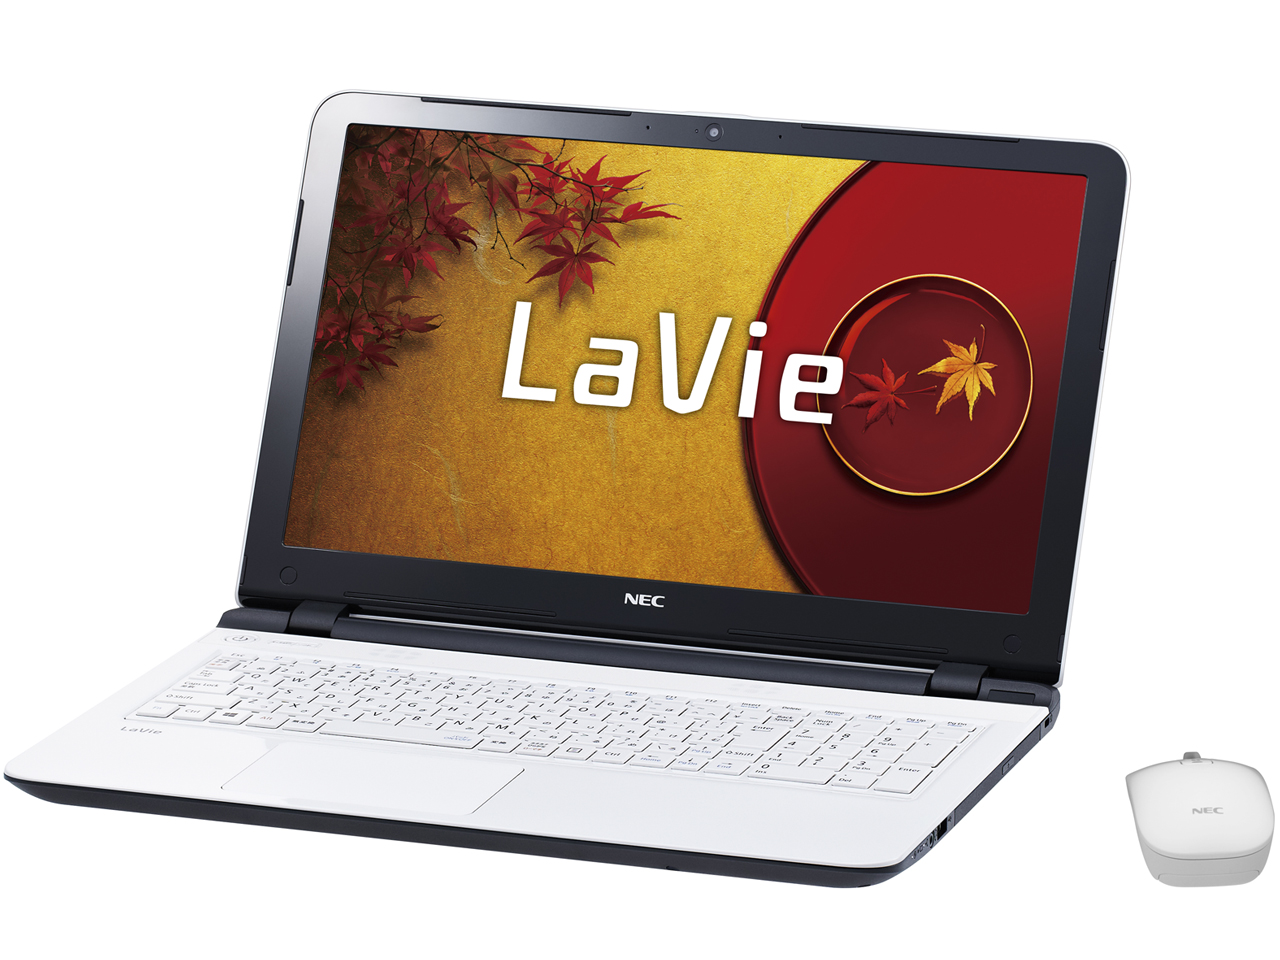 価格.com - LaVie S LS150/TSW PC-LS150TSW [エクストラホワイト] の製品画像